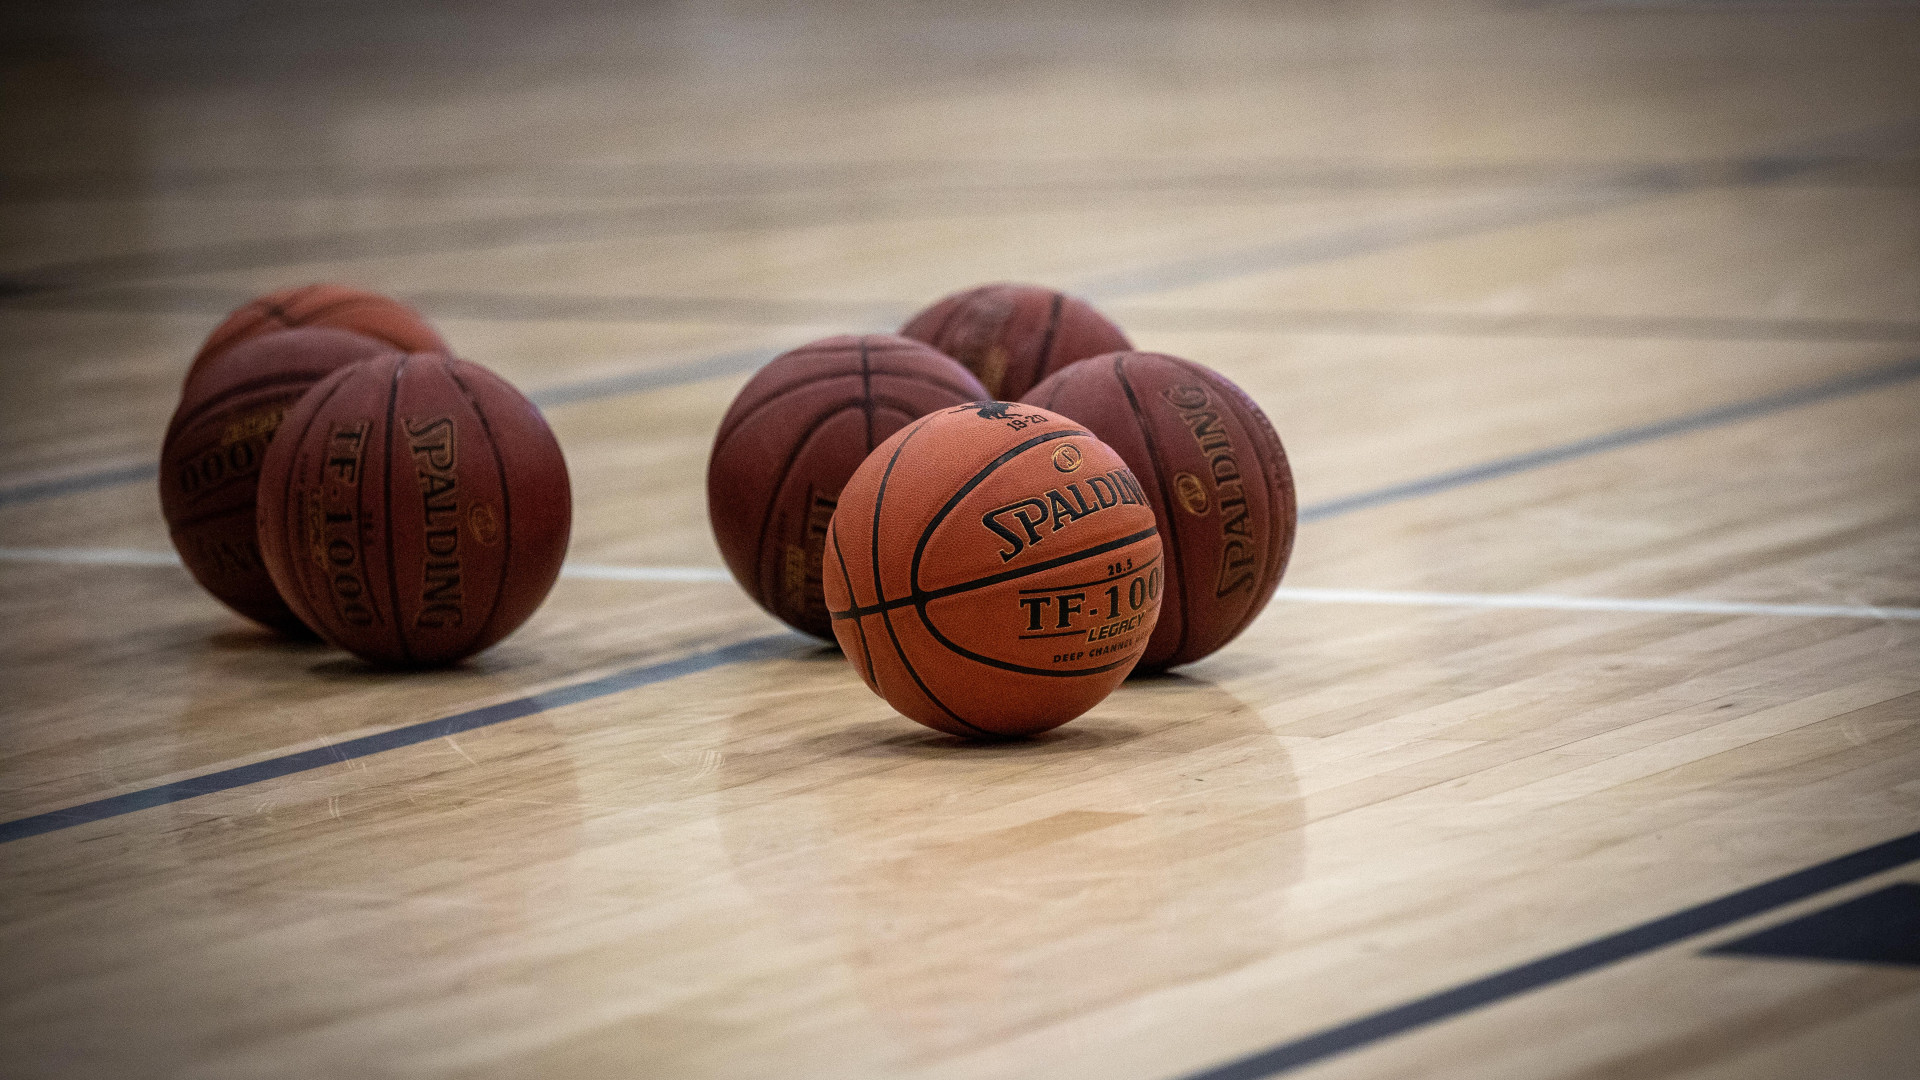 Школа Шымкента хотела приобрести баскетбольные мячи за 232 тысячи тенге - Bizmedia.kz